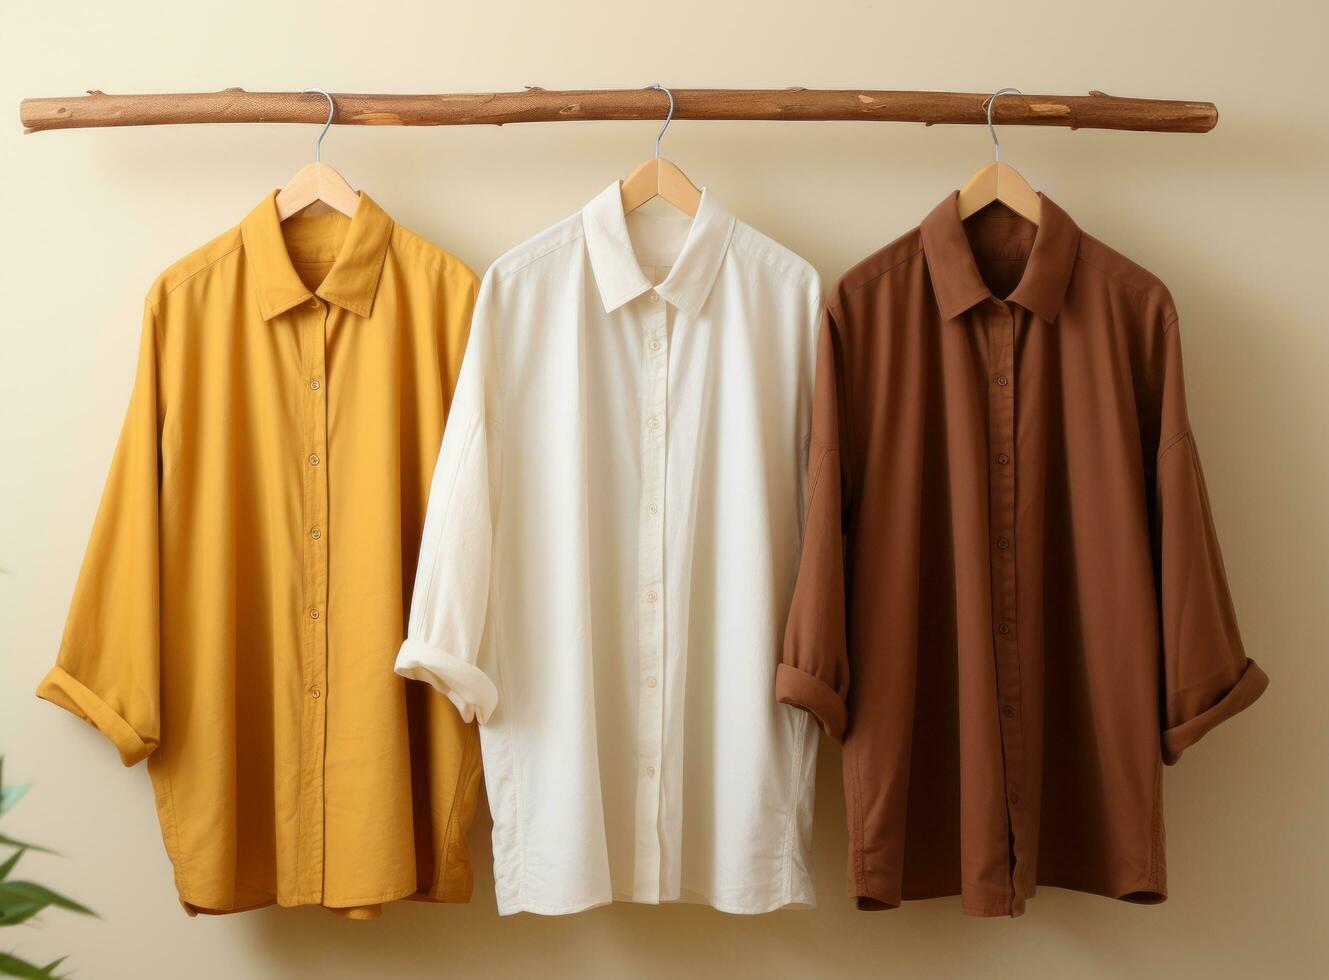 drie jurk overhemden hangende Aan een houten hanger foto